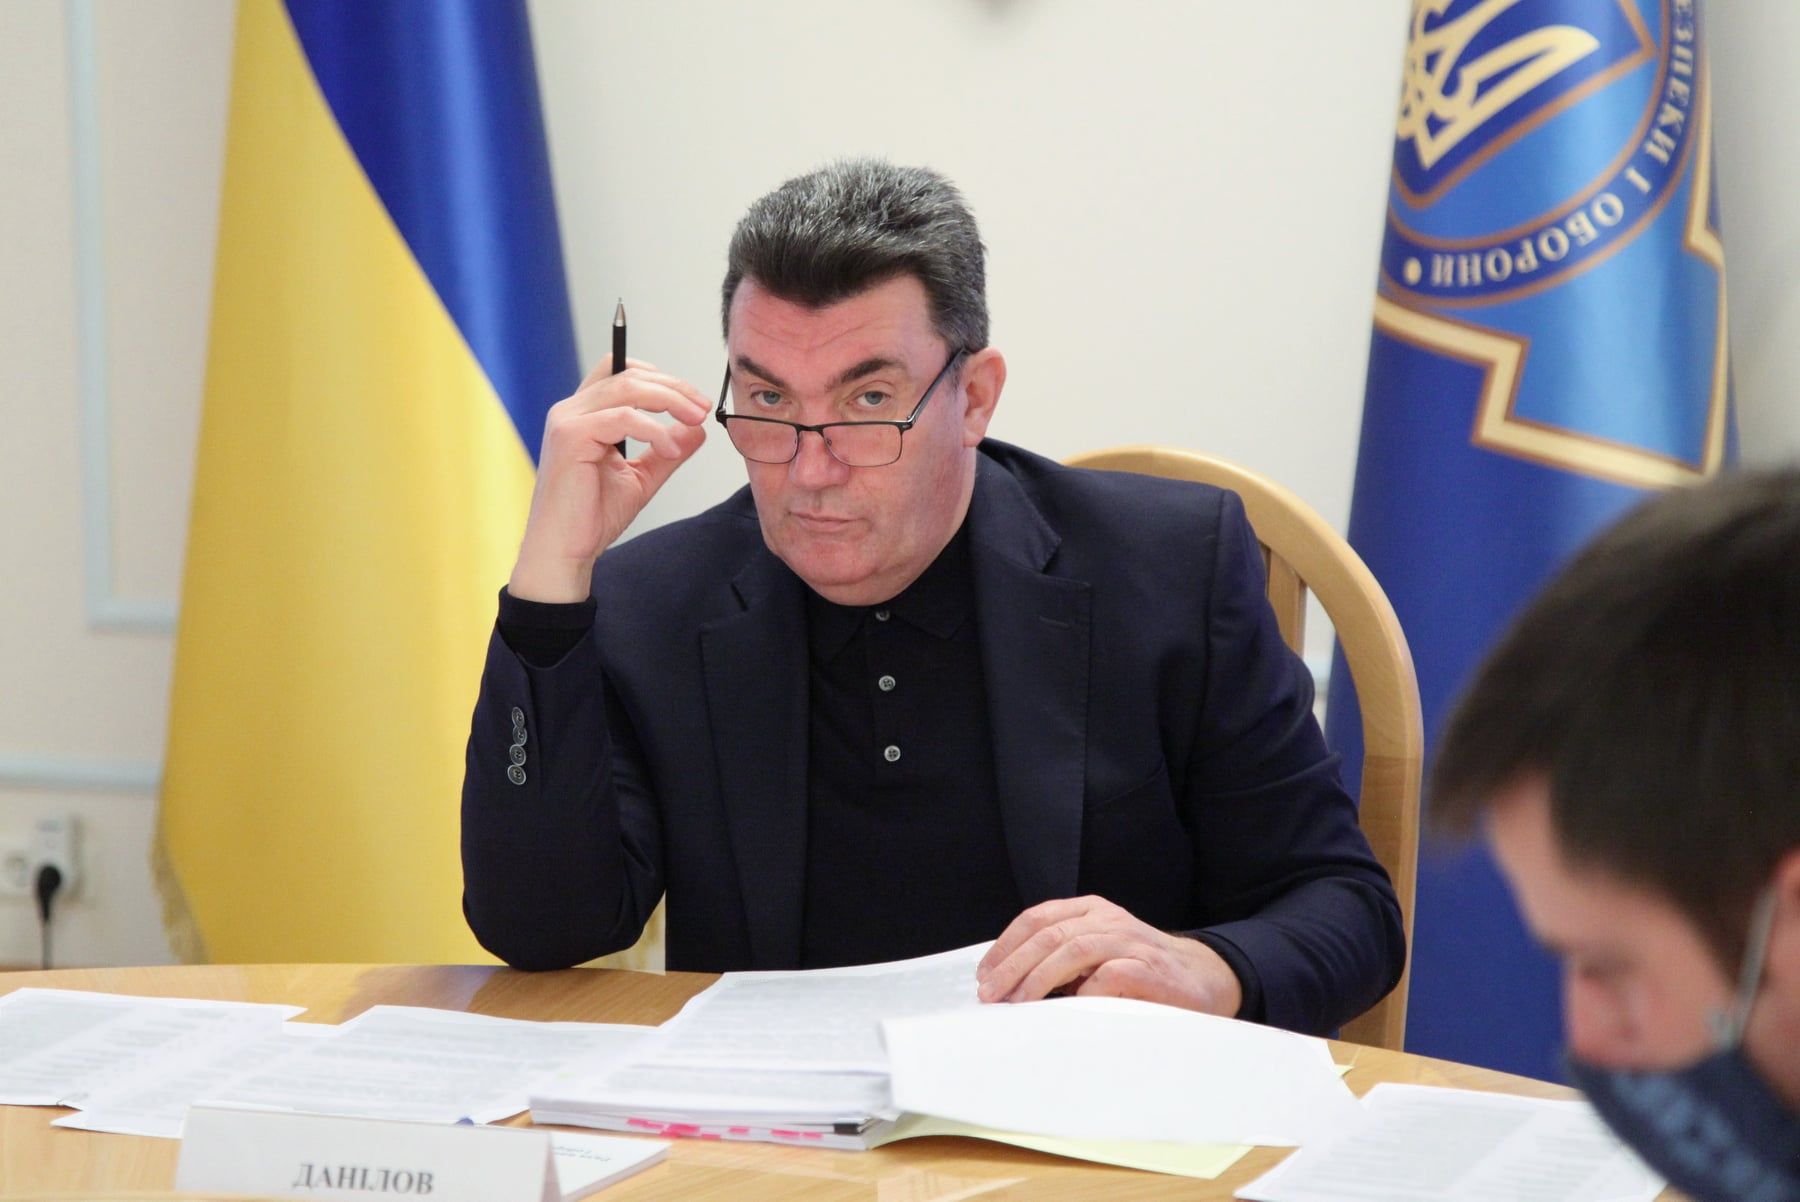 Захід має сплатити Україні компенсацію за відмову від ядерної зброї - Данілов